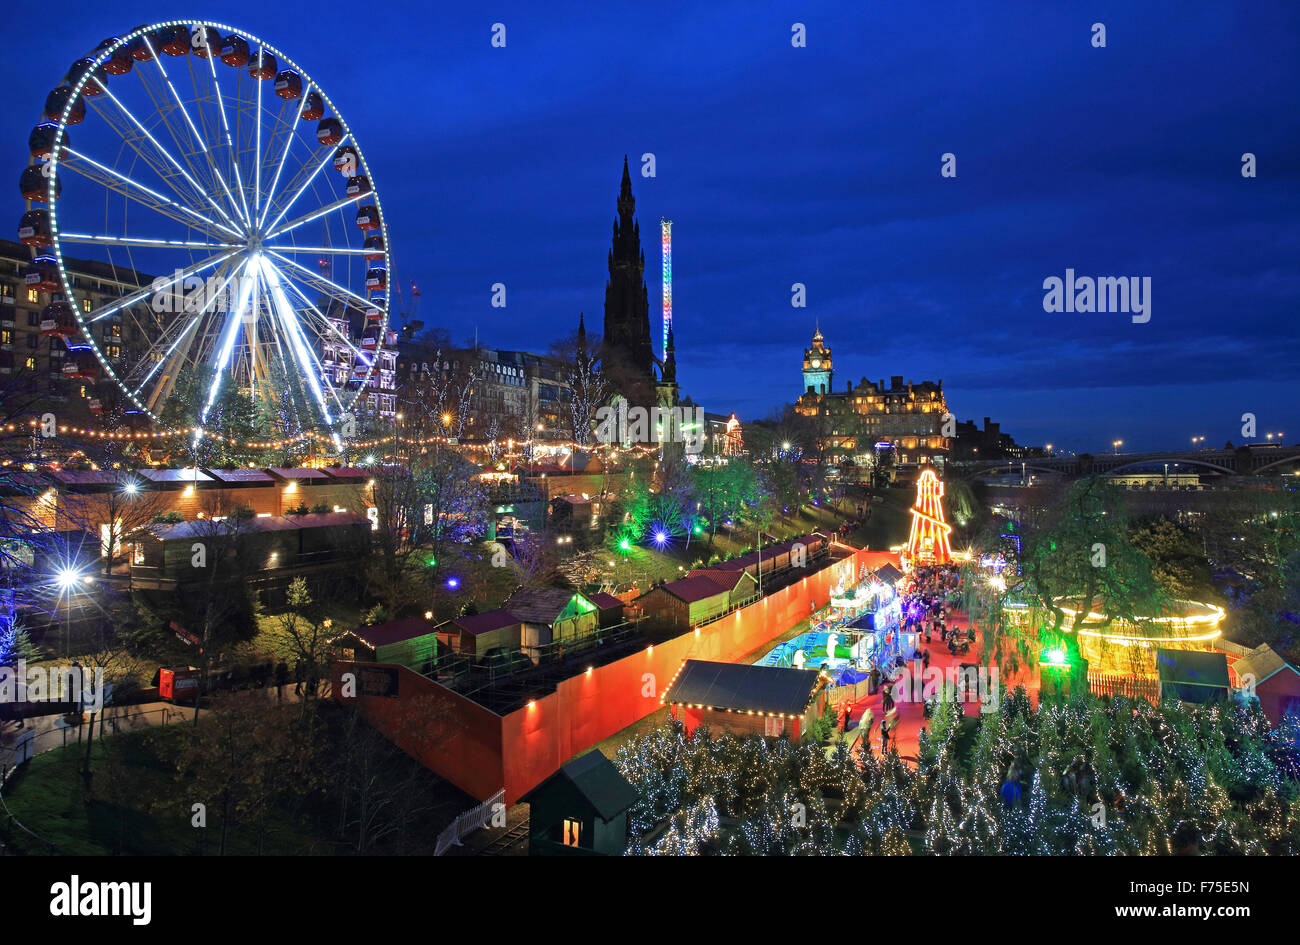 El hermoso mercado de Navidad alemana de Edimburgo en el este de Princes Street Gardens, al anochecer, en Escocia, Reino Unido Foto de stock